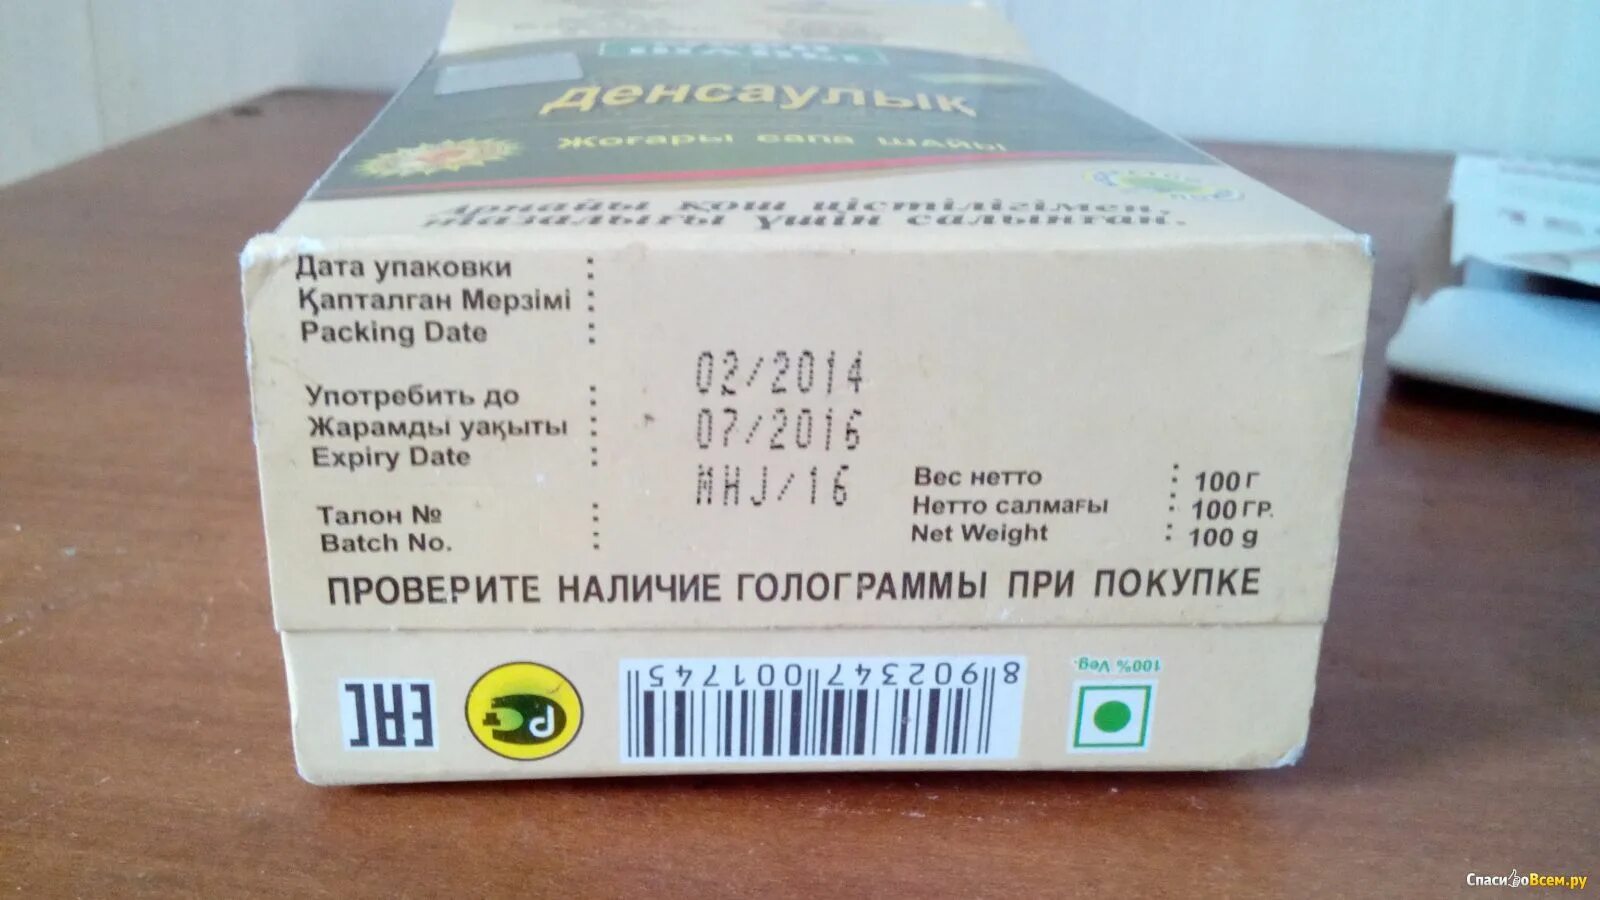 Произведено и упаковано. Дата на упаковке. Дата изготовления на упаковке. Дата изготовления и Дата упаковывания. Дата упаковки и Дата изготовления.